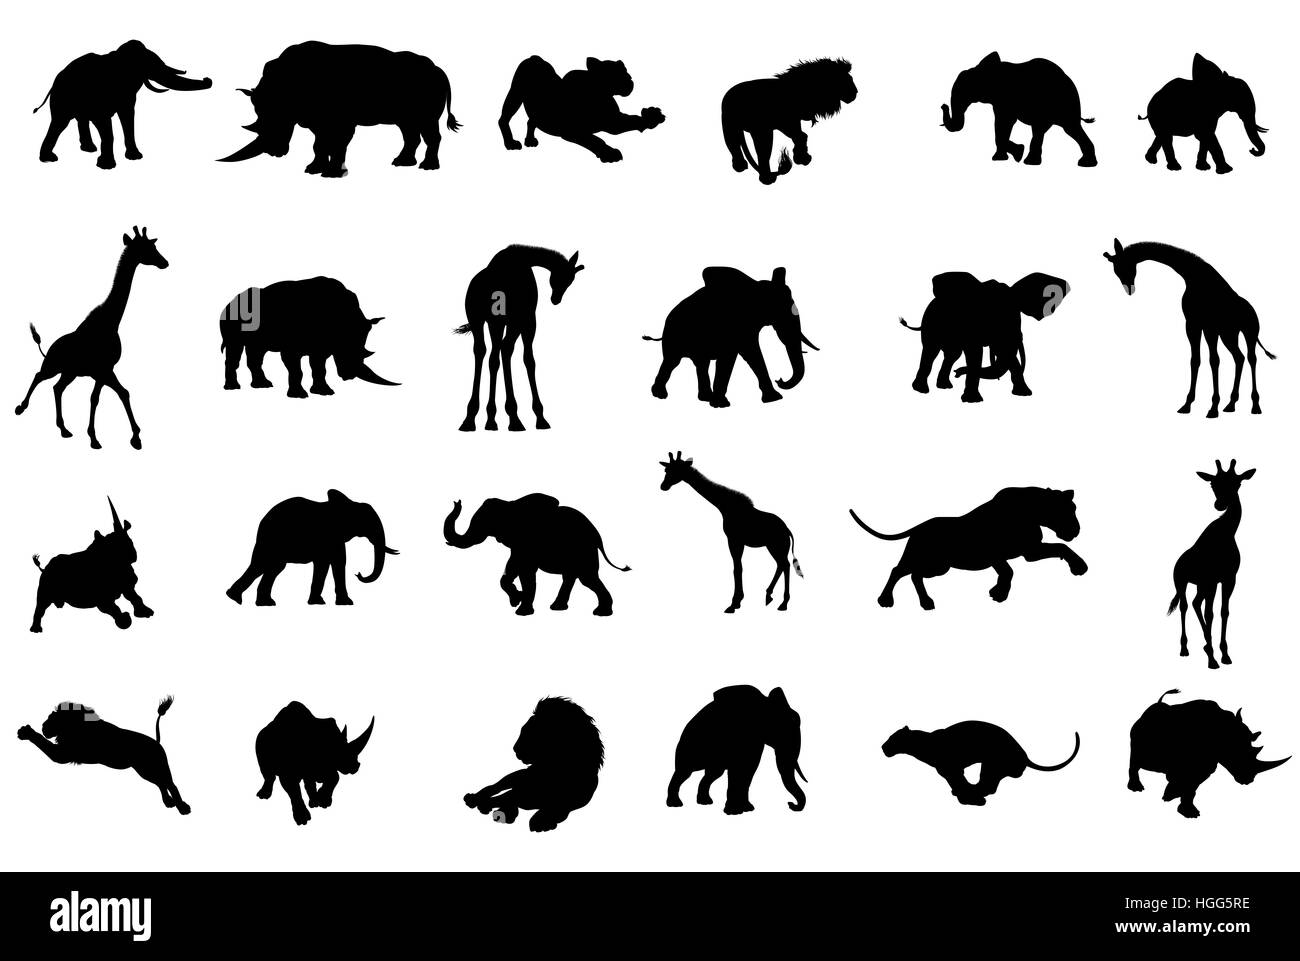 Une silhouette animale africaine safari set y compris des éléphants, des girafes, des rhinocéros et des lions Banque D'Images